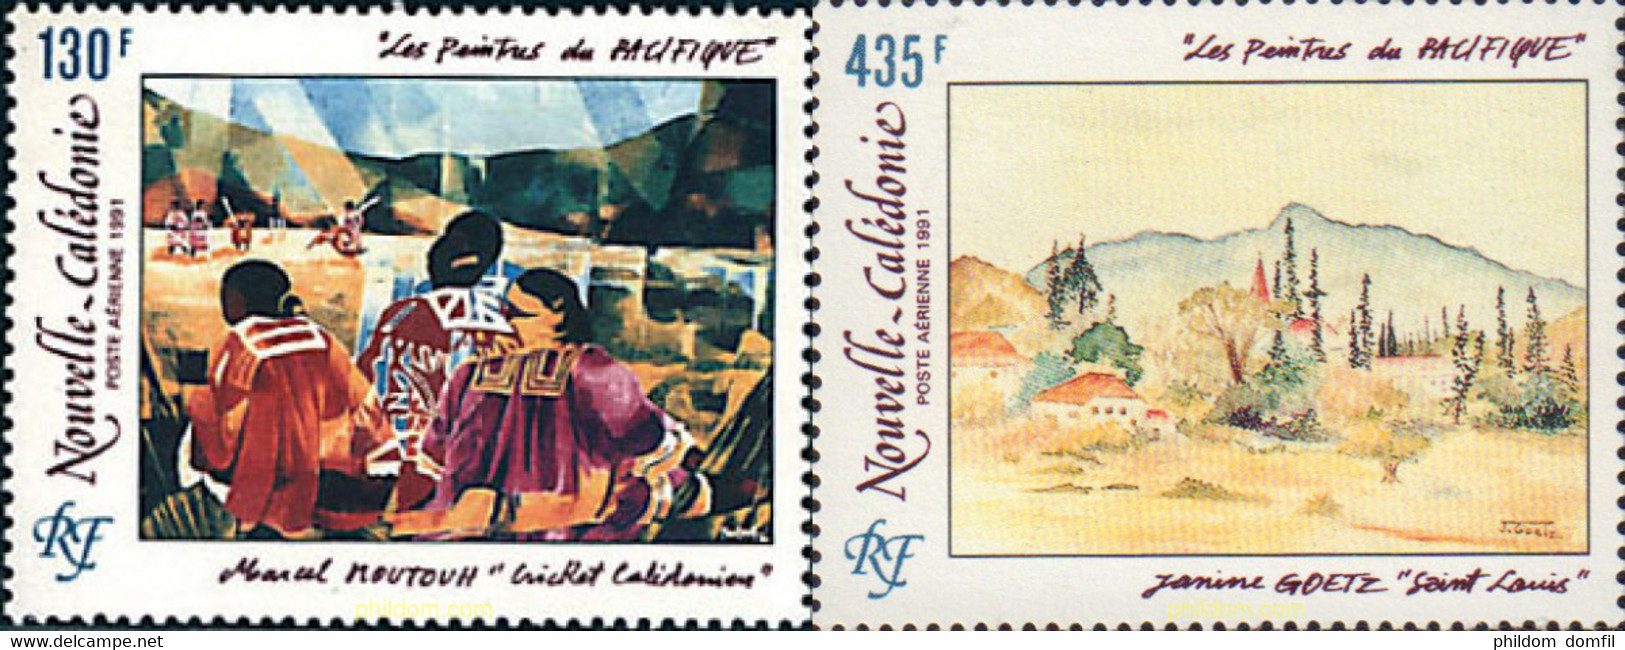 44554 MNH NUEVA CALEDONIA 1991 LOS PINTORES DEL PACIFICO - Used Stamps